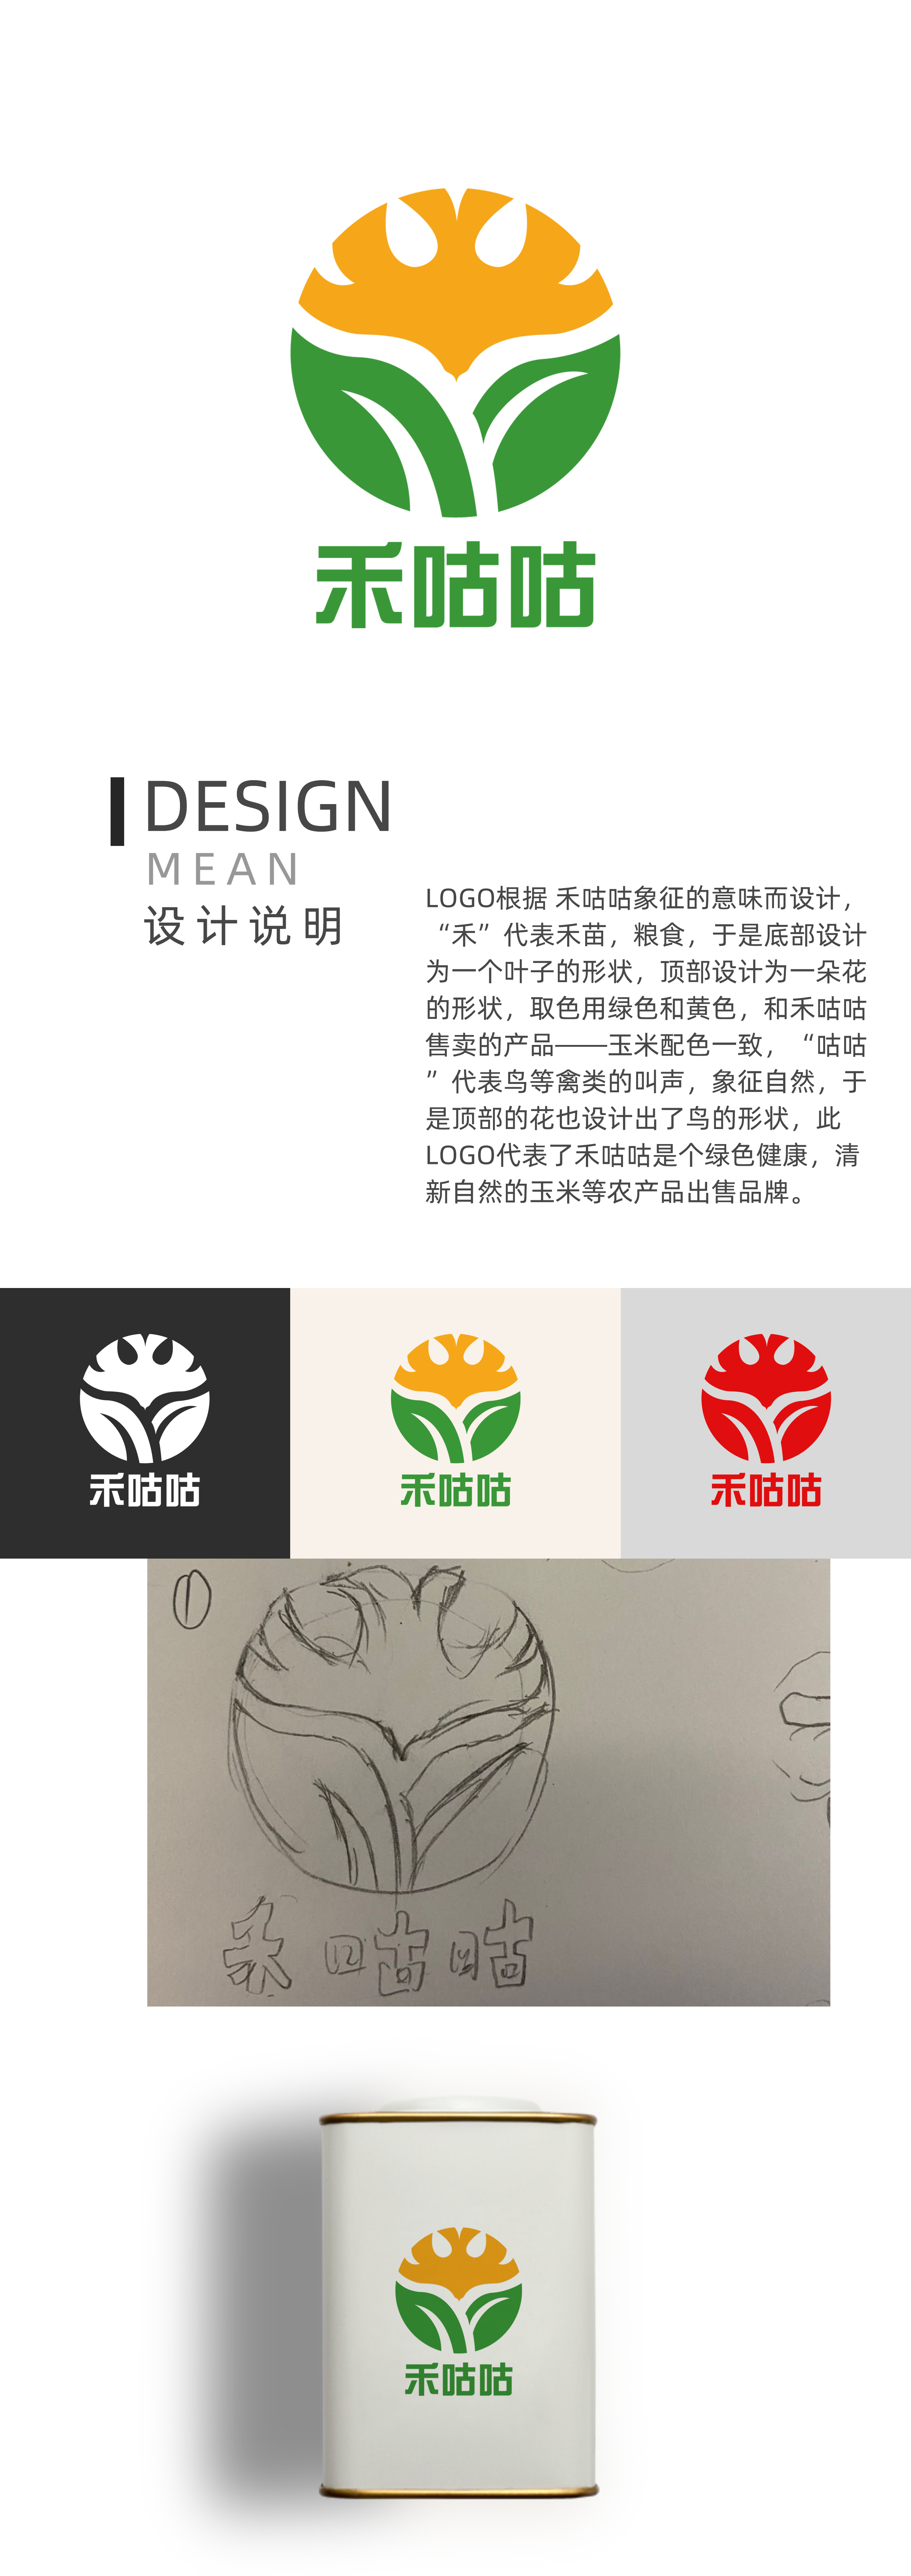 禾咕咕logo设计理念(3份)